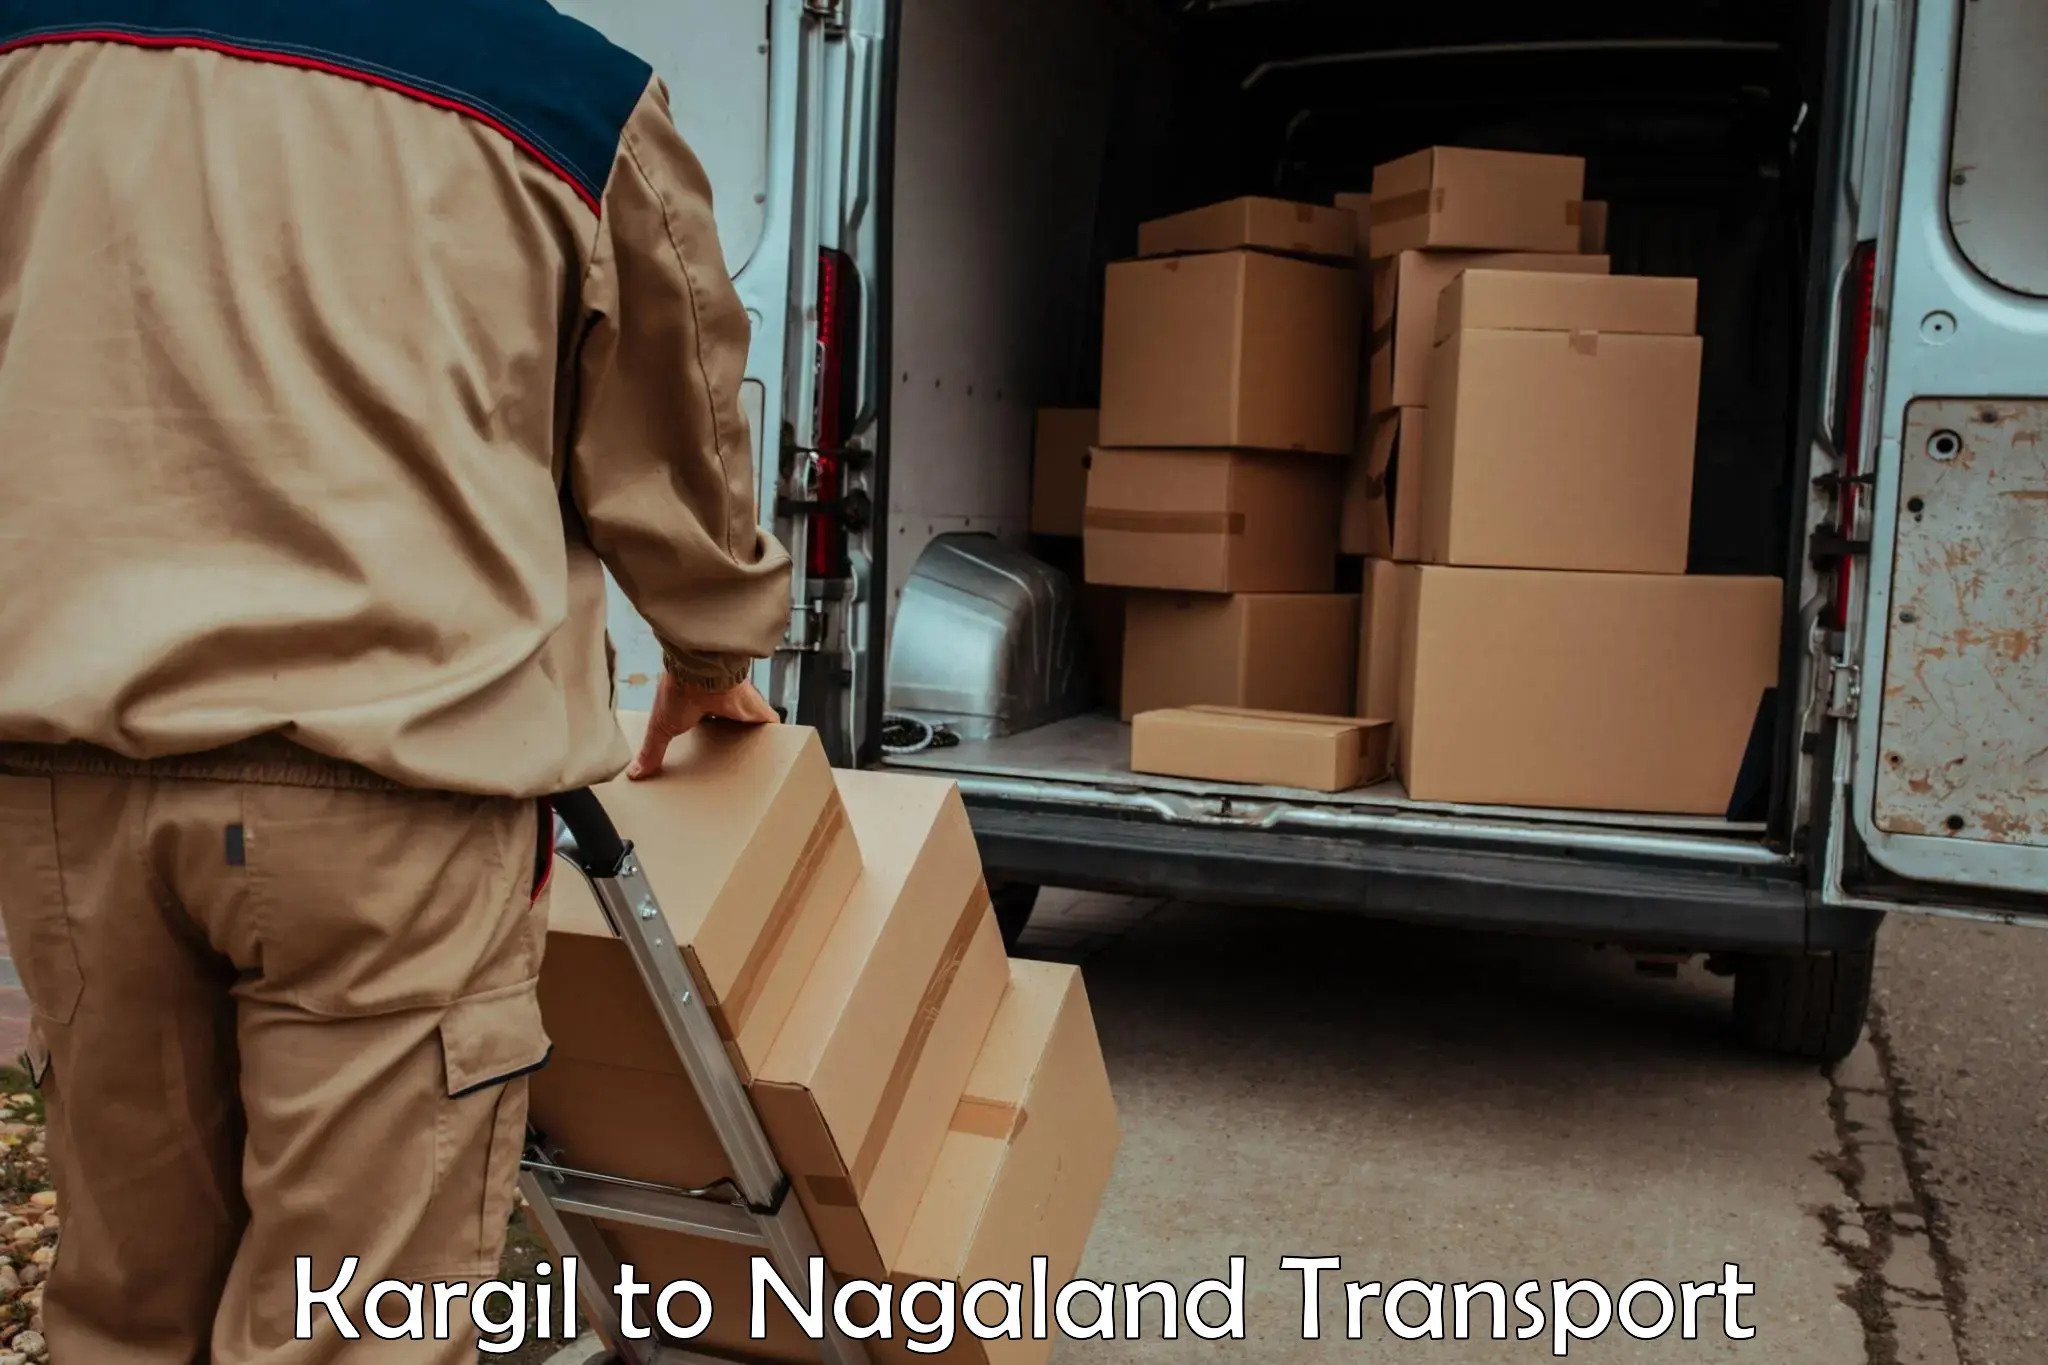 Cycle transportation service Kargil to Nagaland